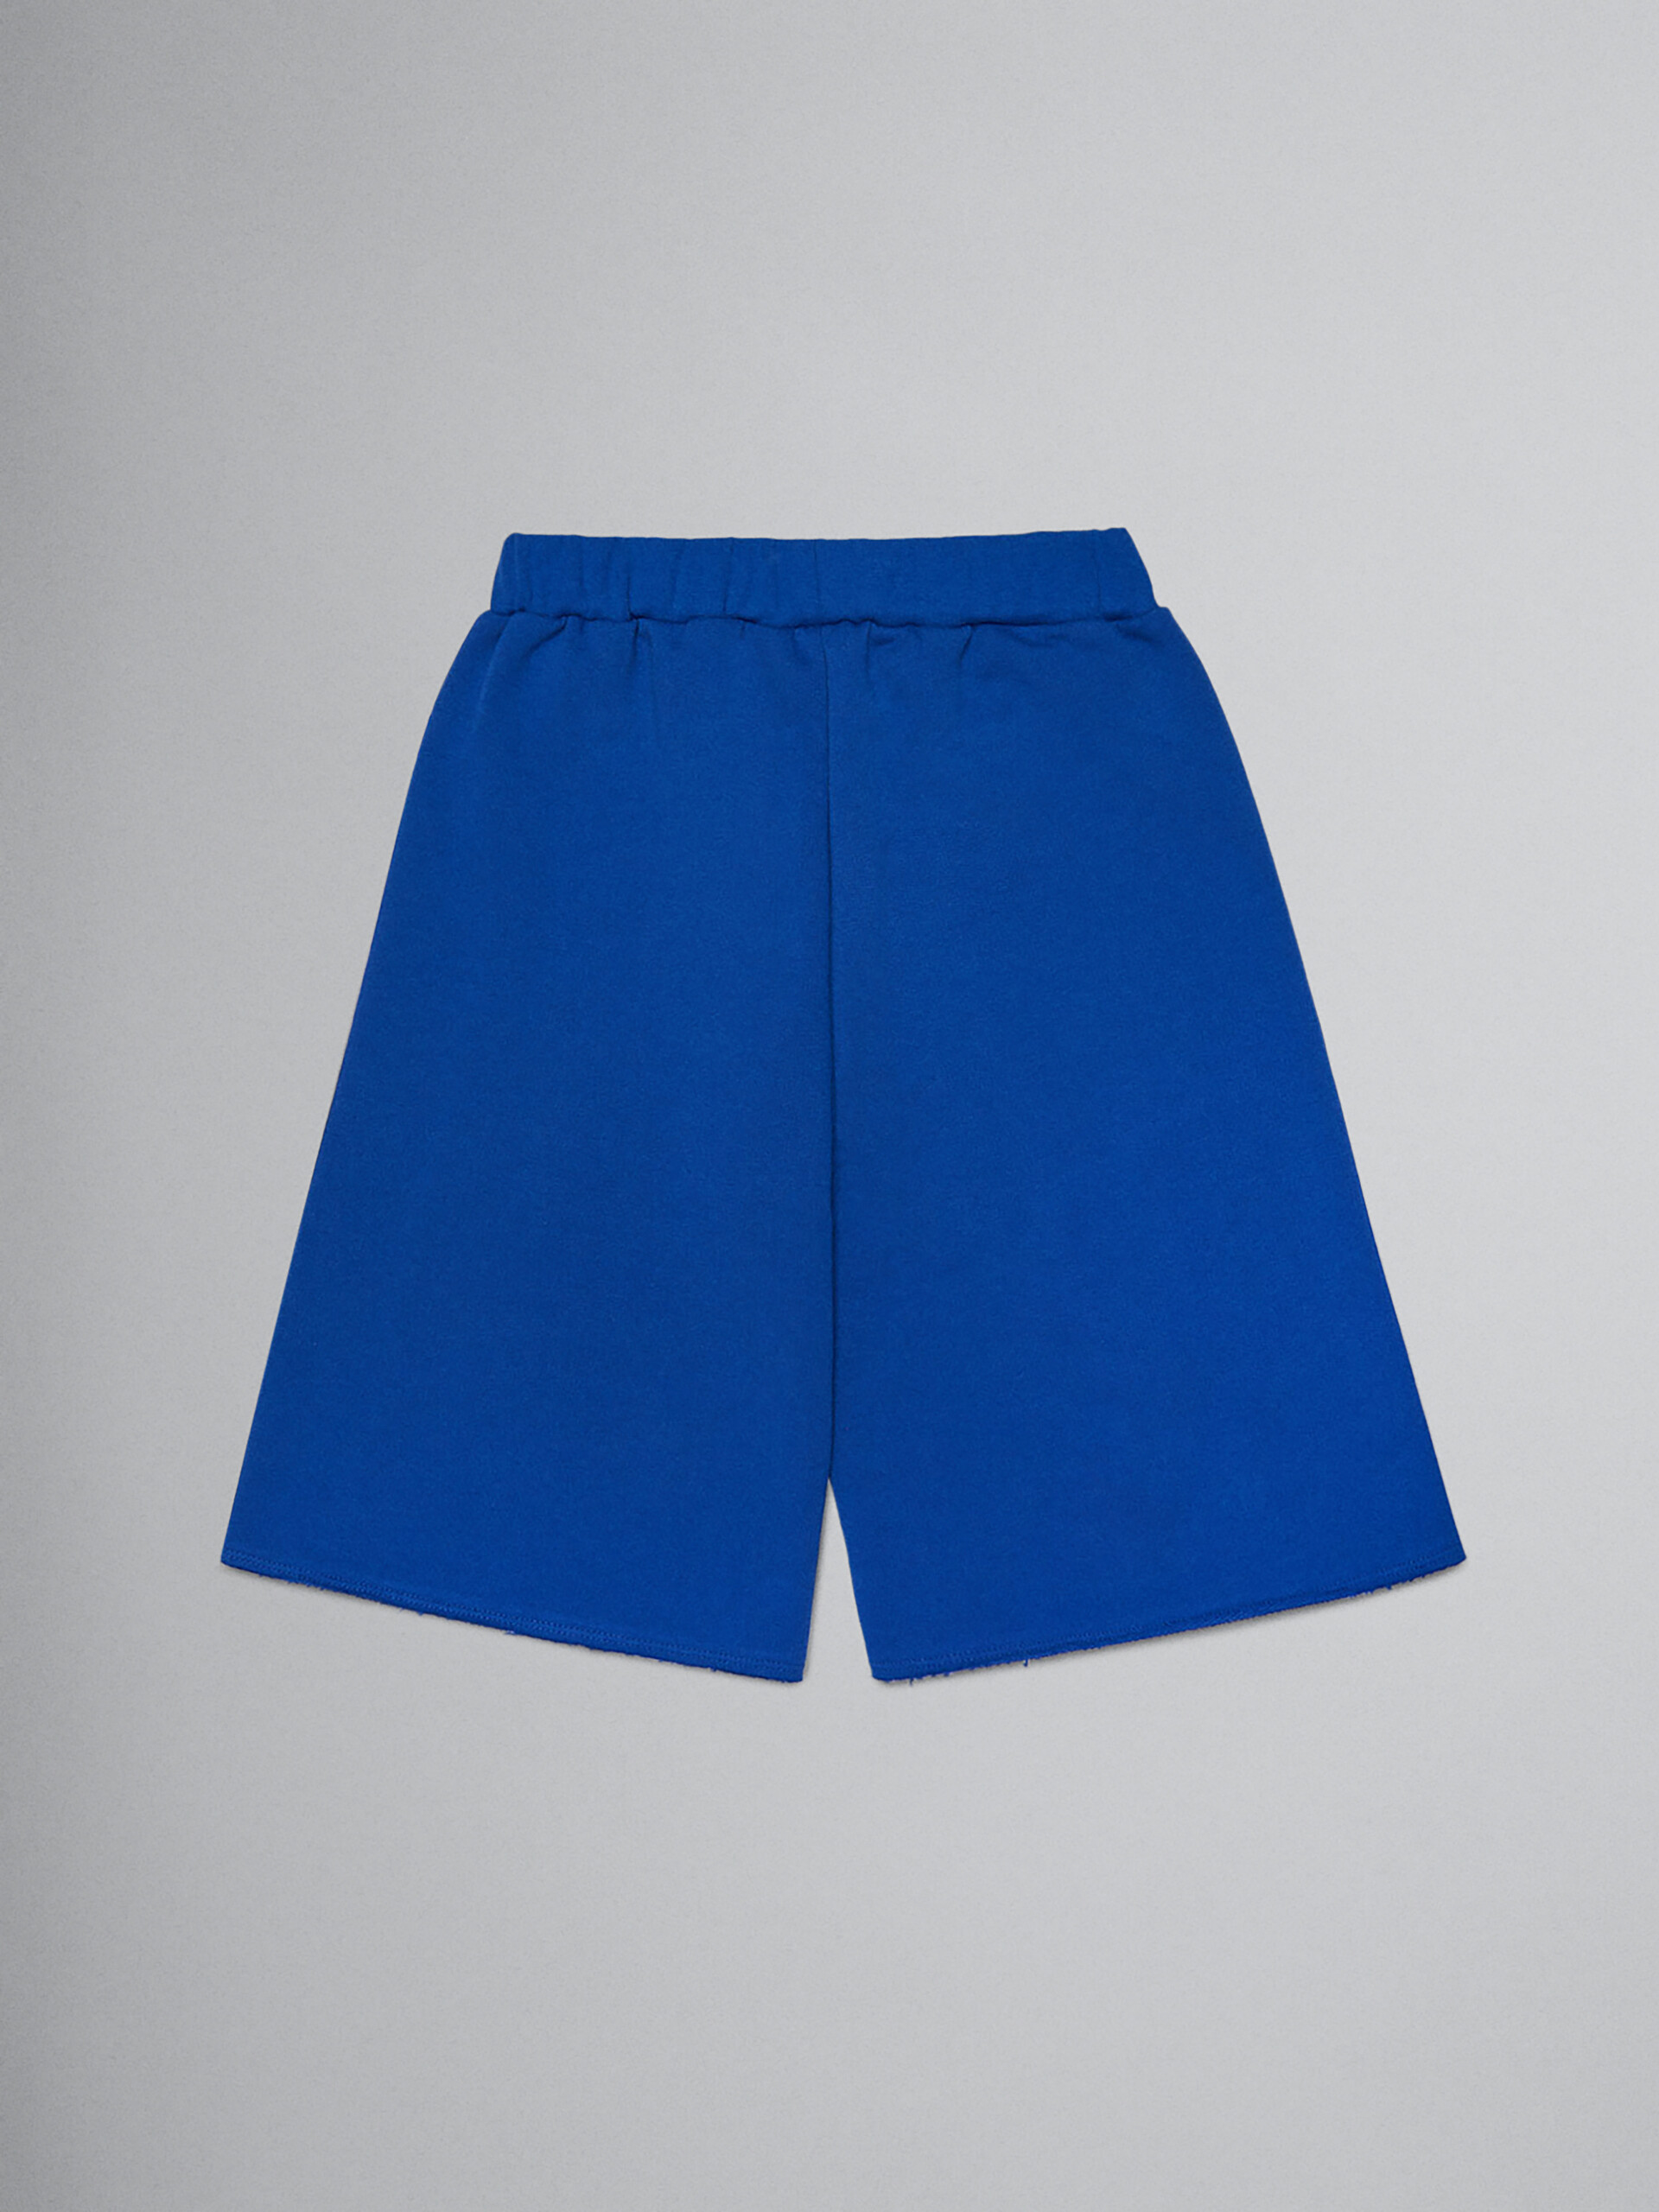 Blue fleece shorts with Brush logo - Pants - Image 2